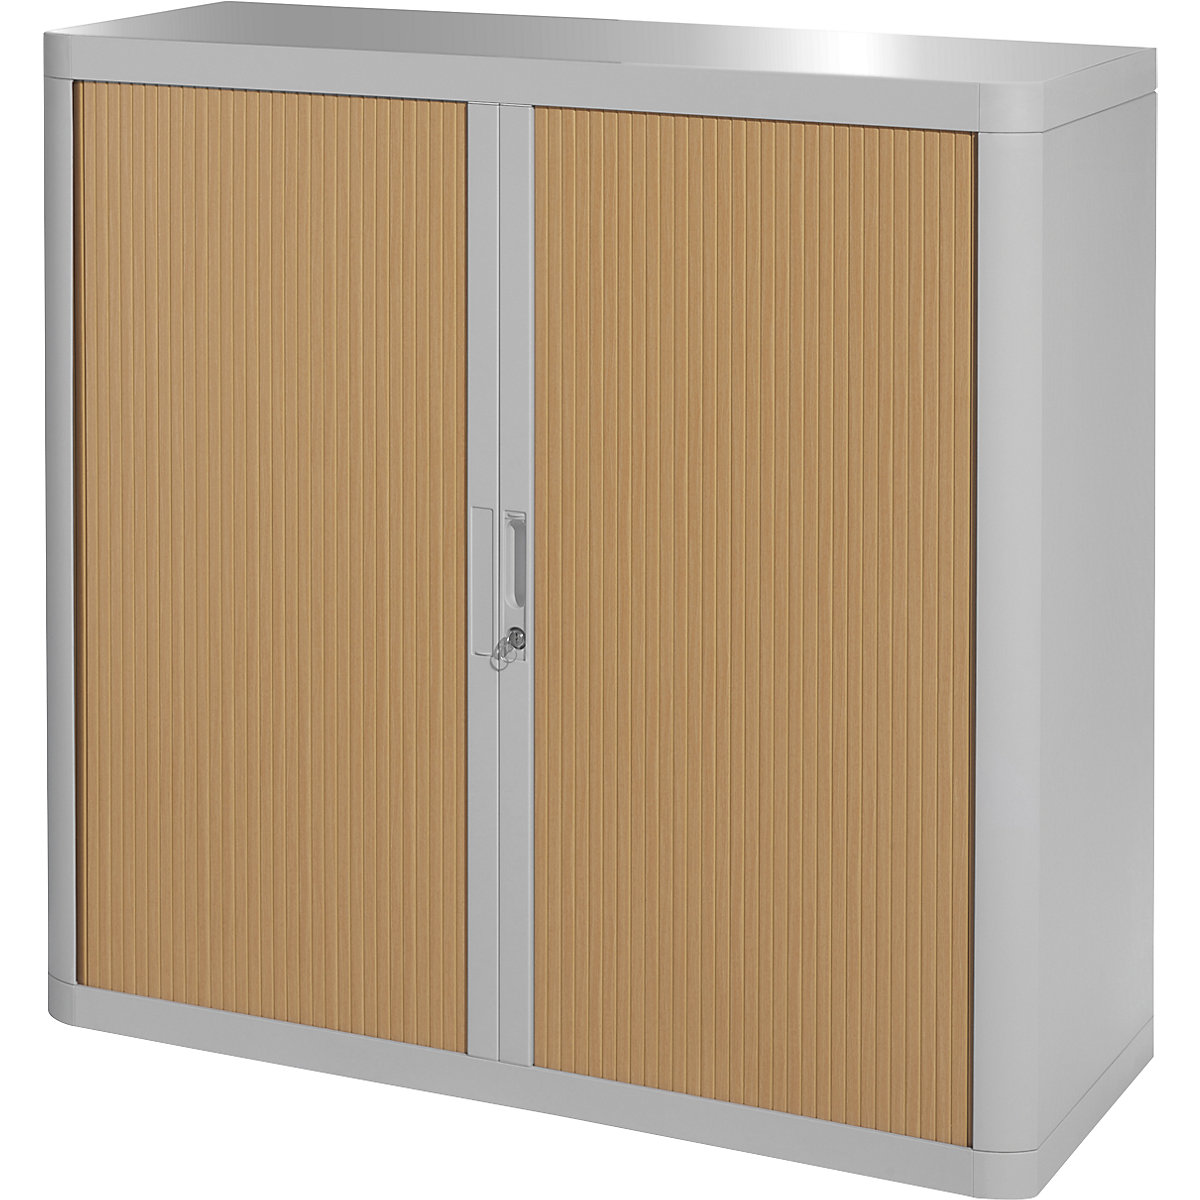 easyOffice® roller shutter cupboard – Paperflow, 2 shelves, height 1040 mm, grey / beech-18